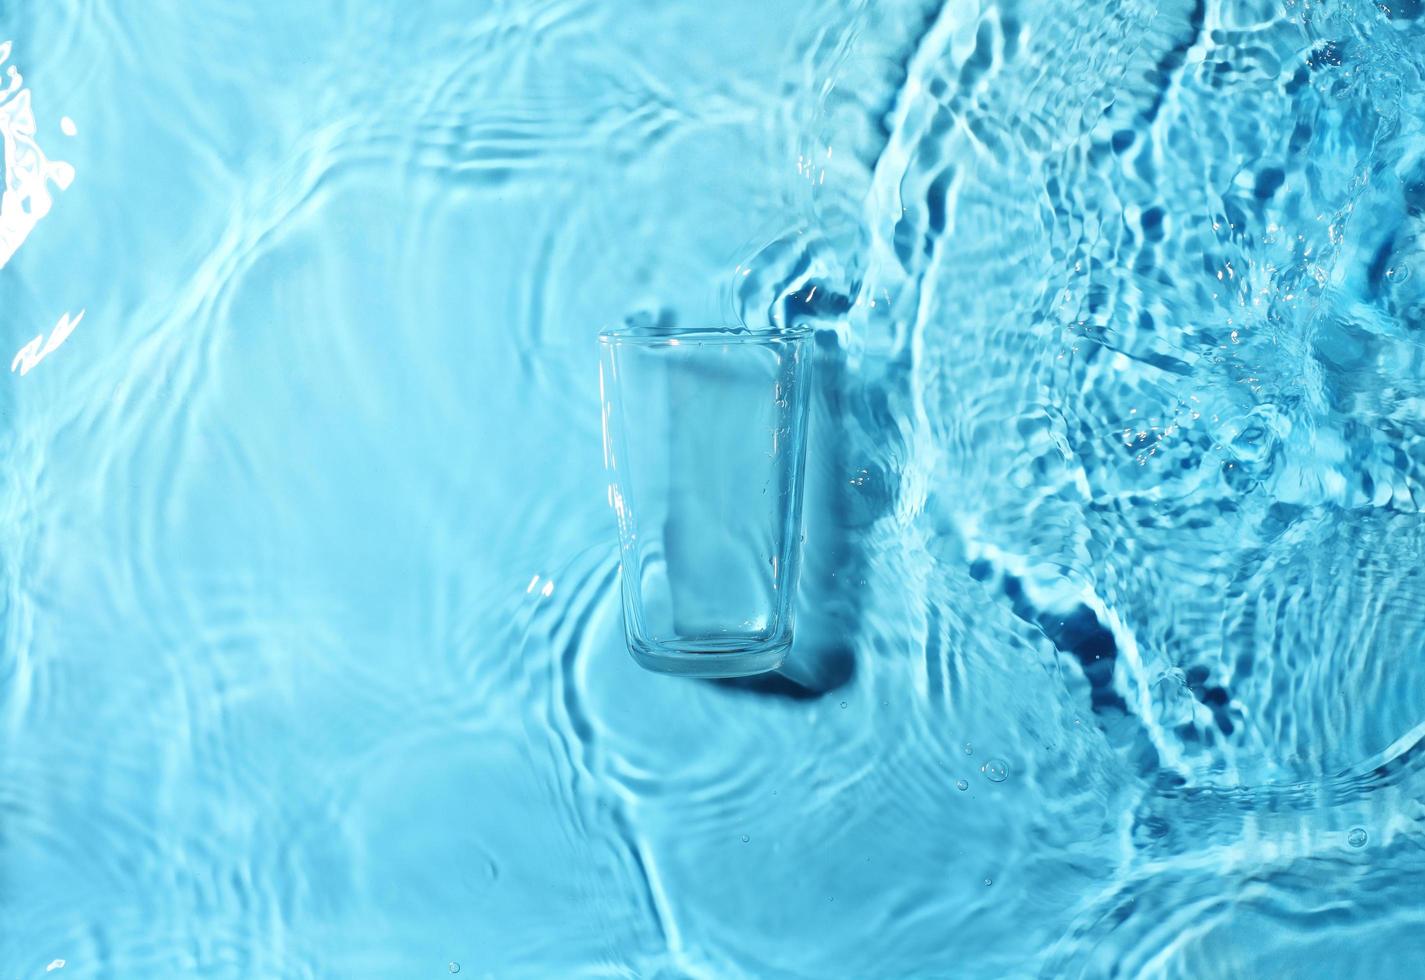 El vaso vacío flota en agua clara. foto